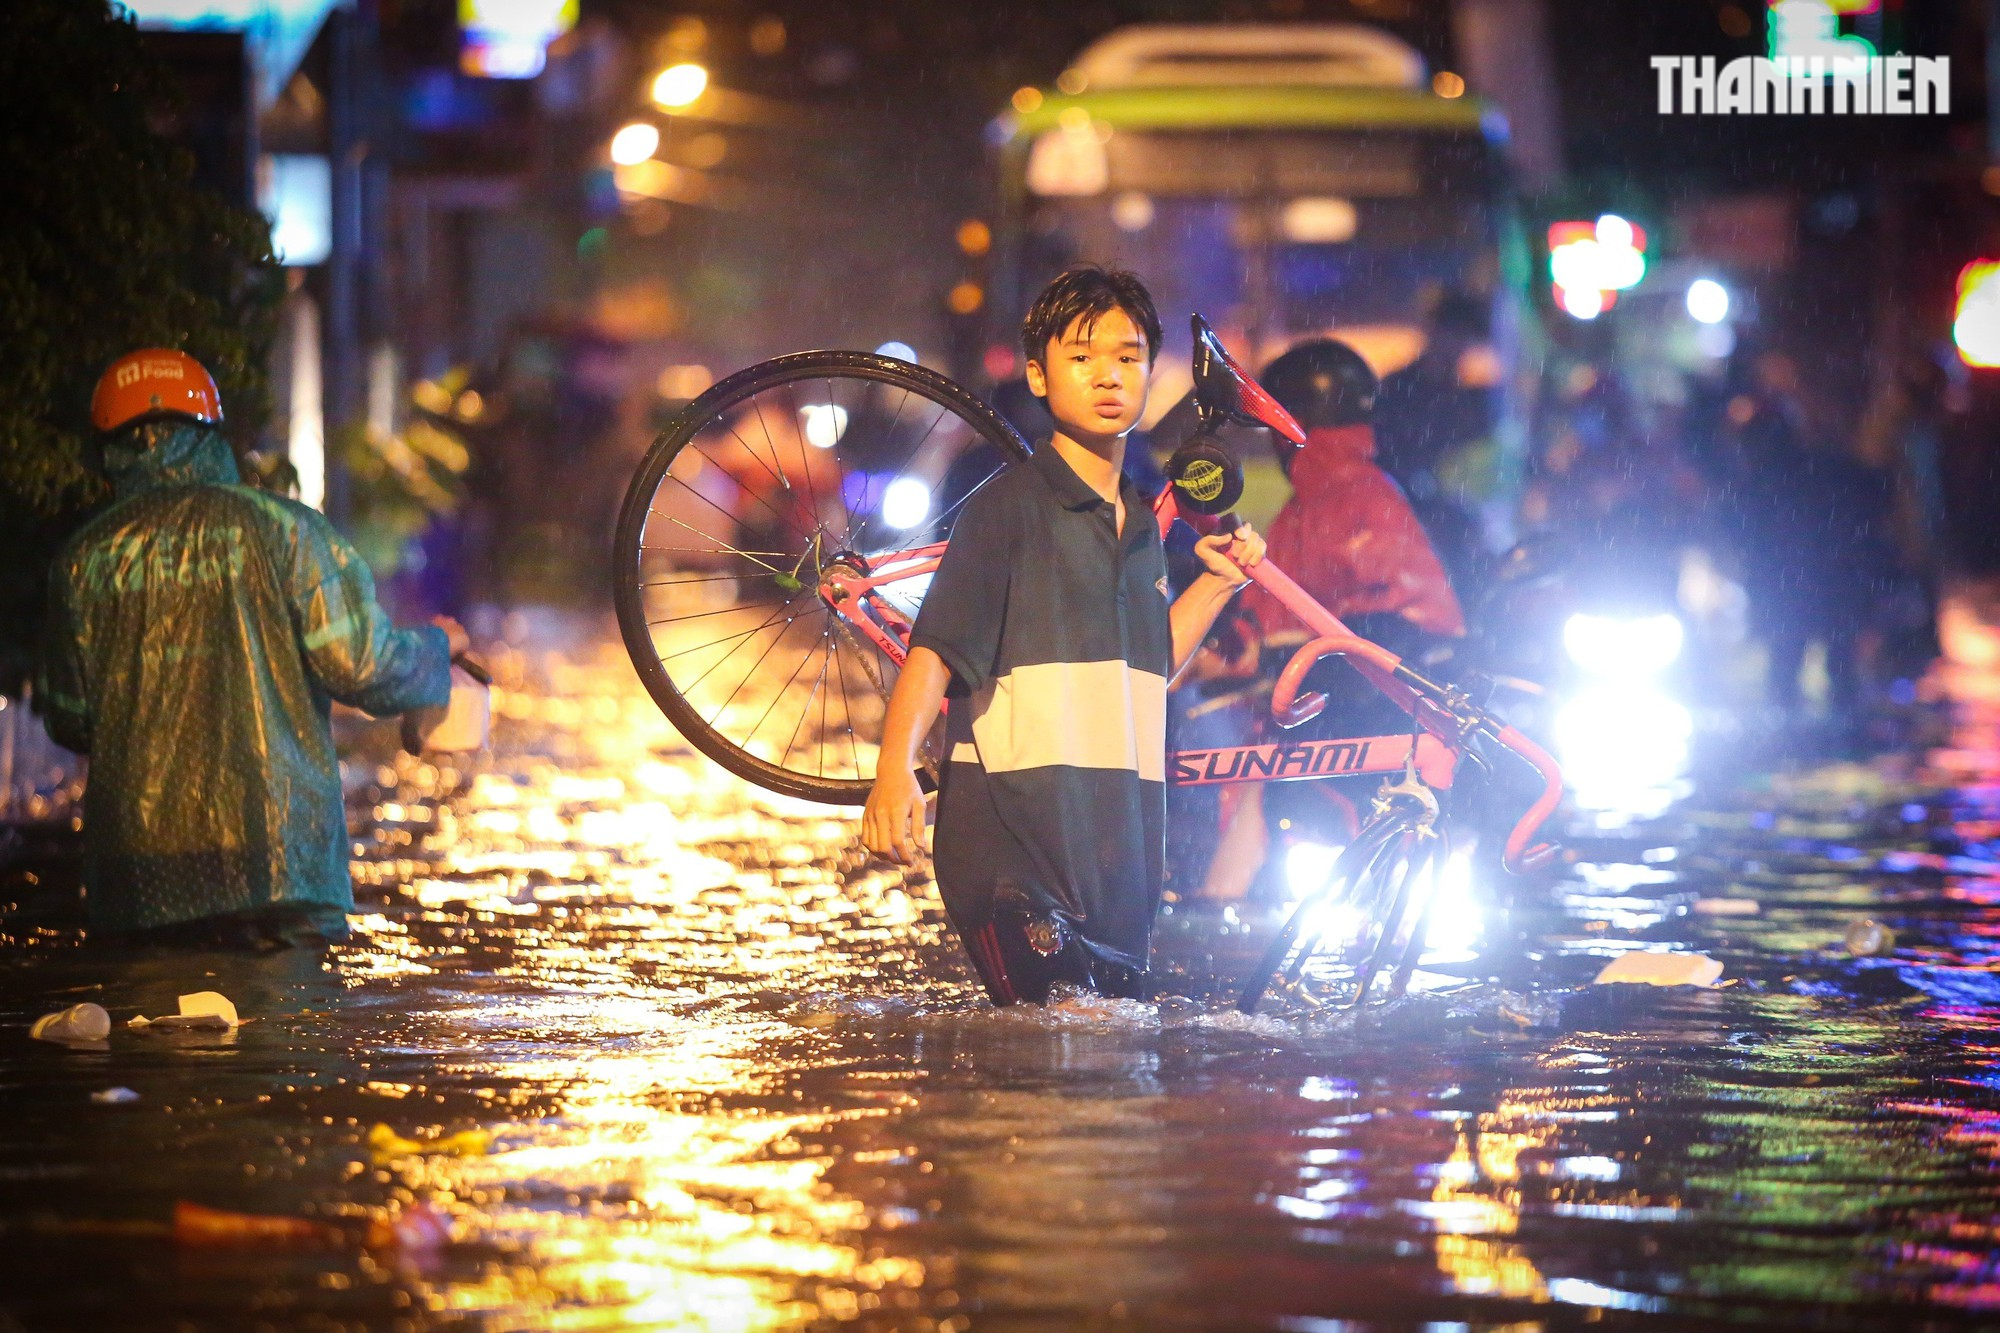 TP.HCM mưa lớn tối nay: Nước dâng tới yên, có người 'cõng xe' qua đoạn ngập - Ảnh 2.